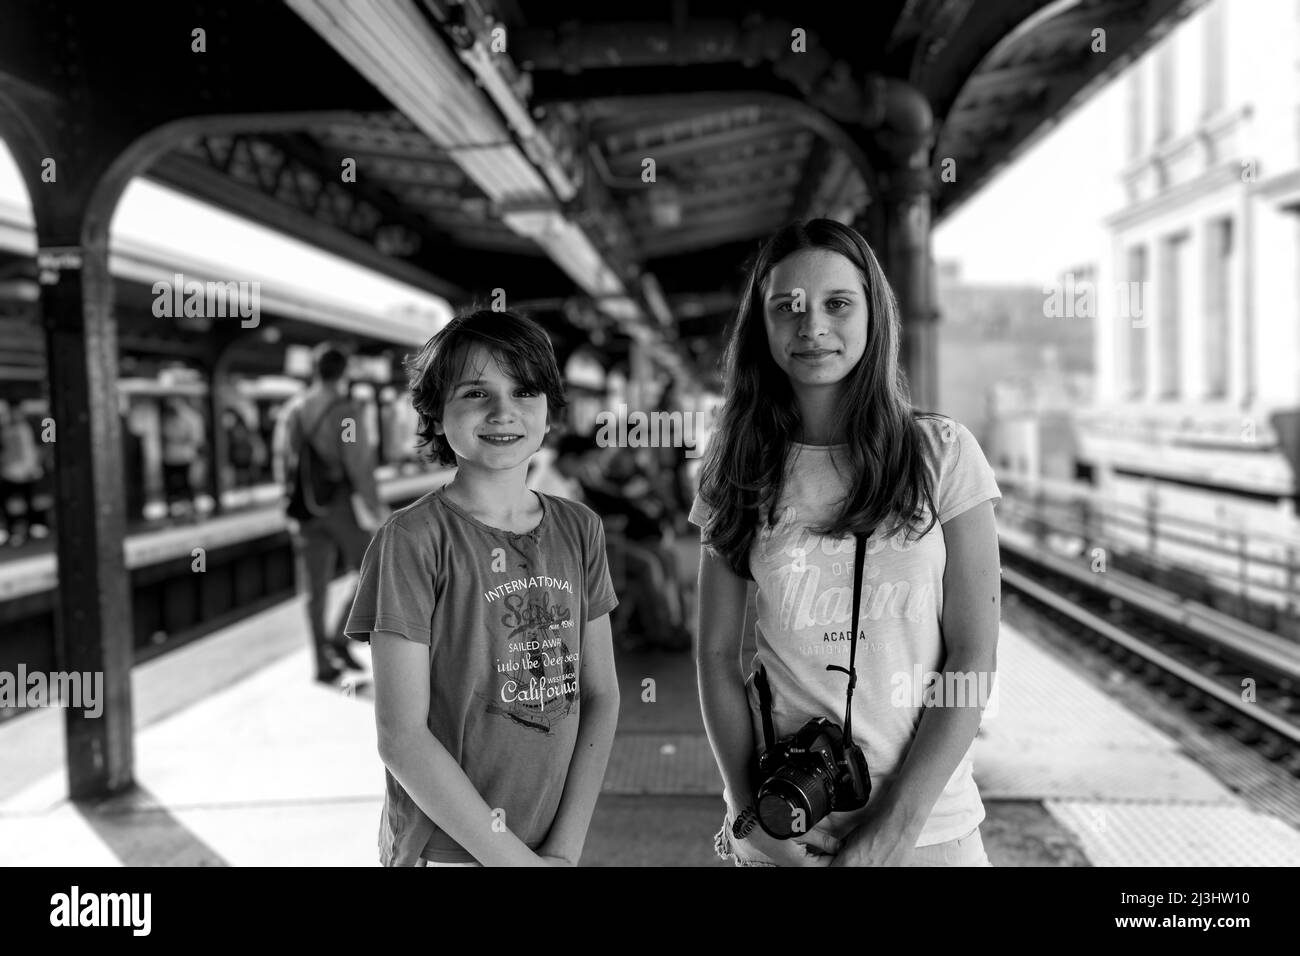 Myrtle AV, New York City, NY, USA, 14 Jahre altes kaukasisches Teenager-Mädchen und 12 Jahre altes kaukasisches Teenager-Mädchen – beide mit braunen Haaren und sommerlichem Styling warten an einer U-Bahn-Station in Brooklyn auf die U-Bahn Stockfoto